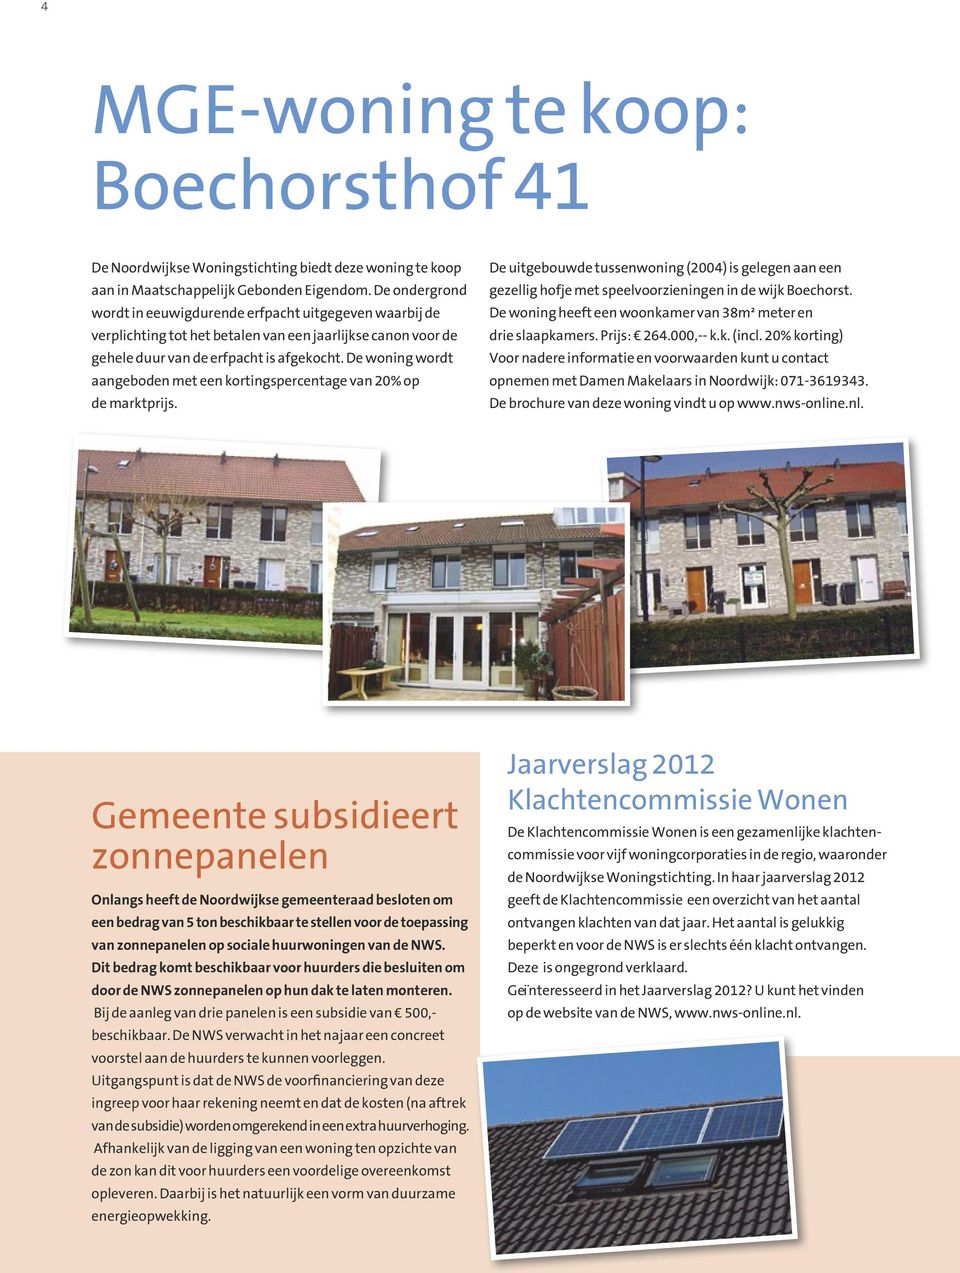 De woning wordt aangeboden met een kortingspercentage van 20% op de marktprijs. De uitgebouwde tussenwoning (2004) is gelegen aan een gezellig hofje met speelvoorzieningen in de wijk Boechorst.